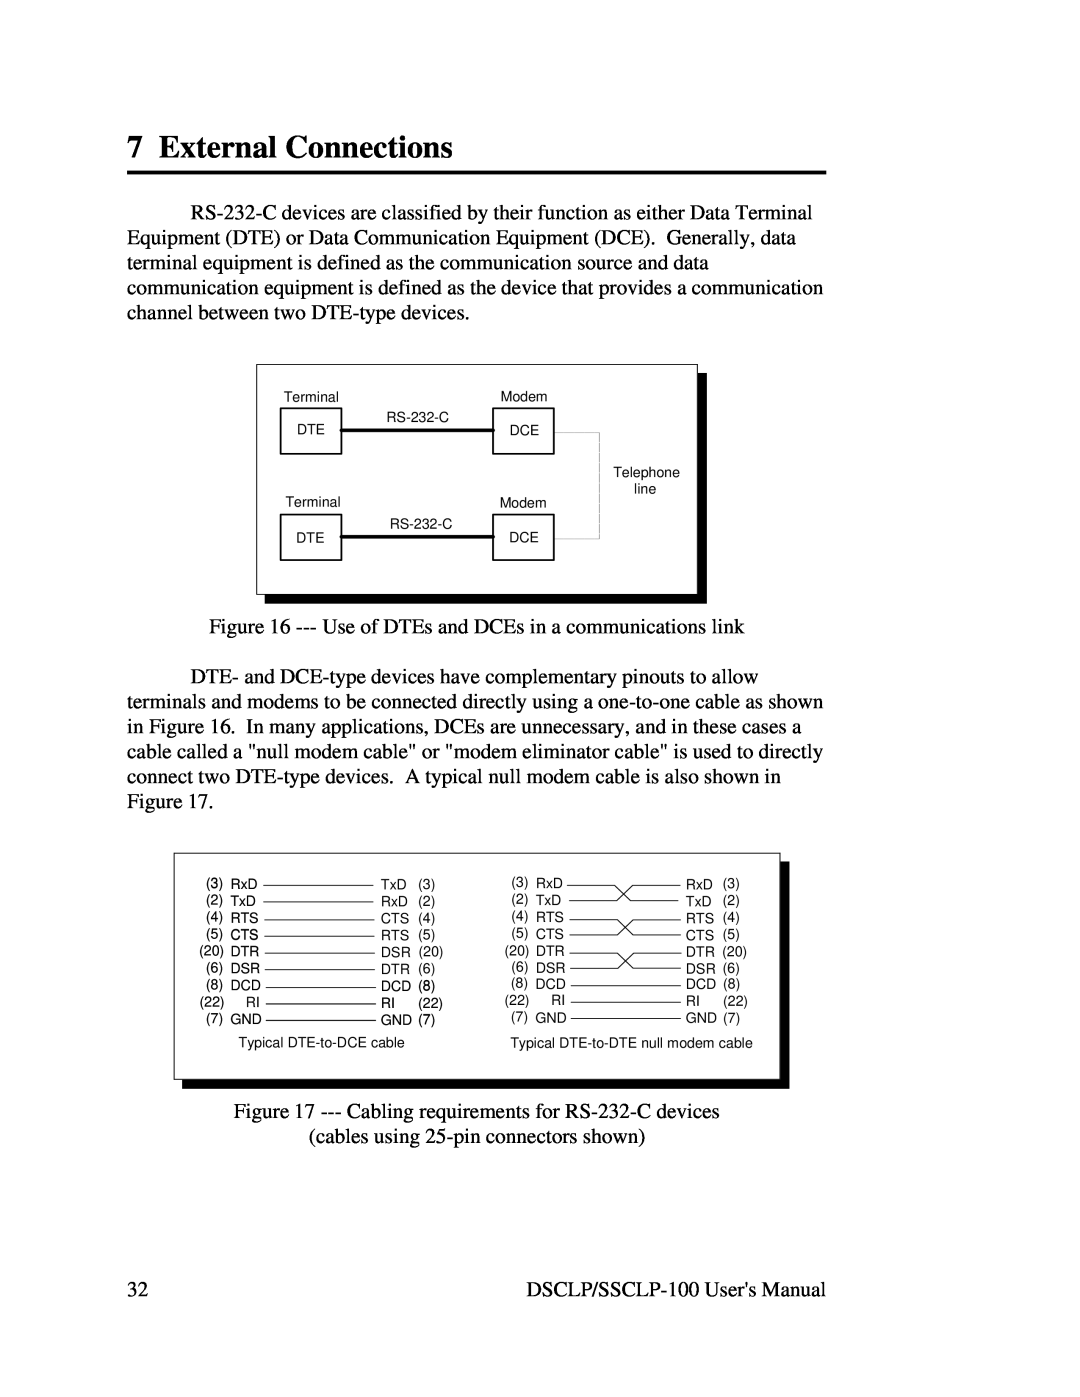 Quatech DSCLP/SSCLP-100 user manual External Connections 